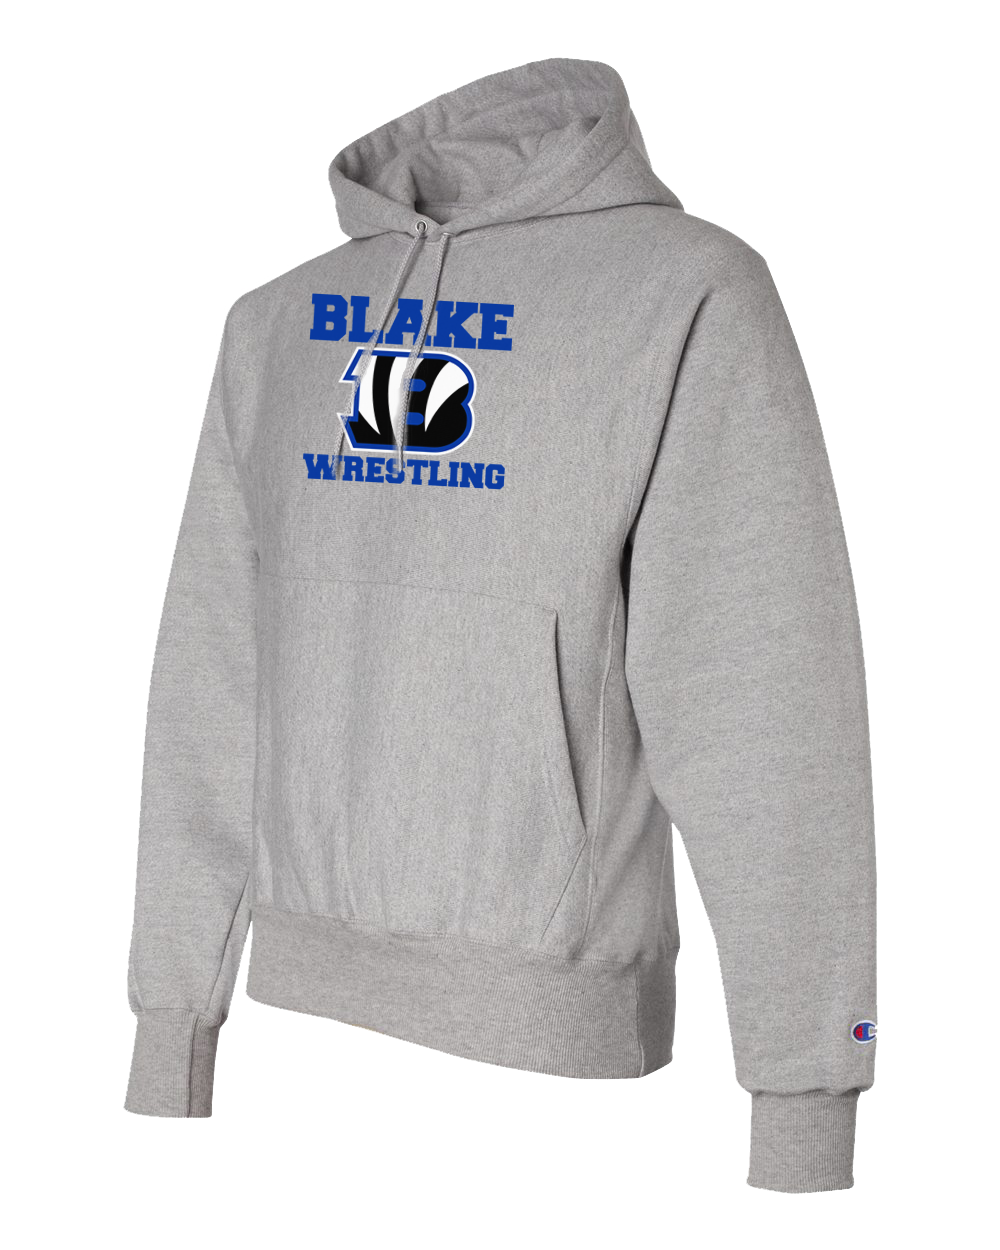 Blake Wrestling Player Pack